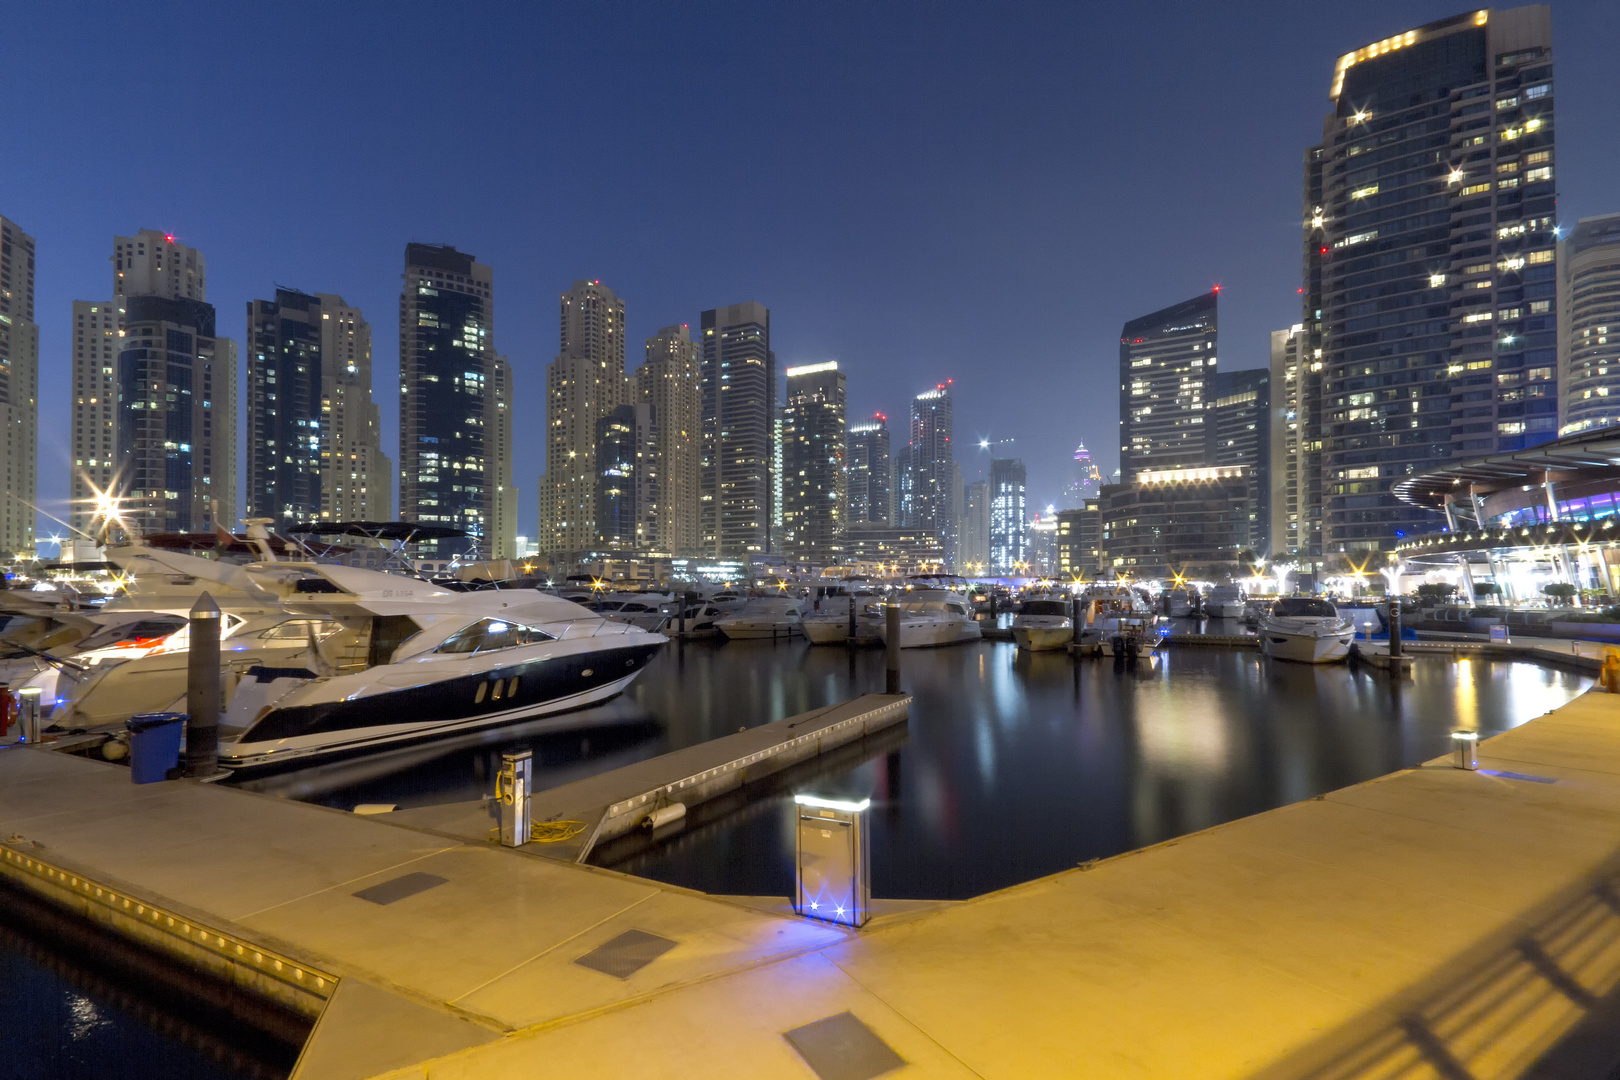 Dubai - The Marina Walk